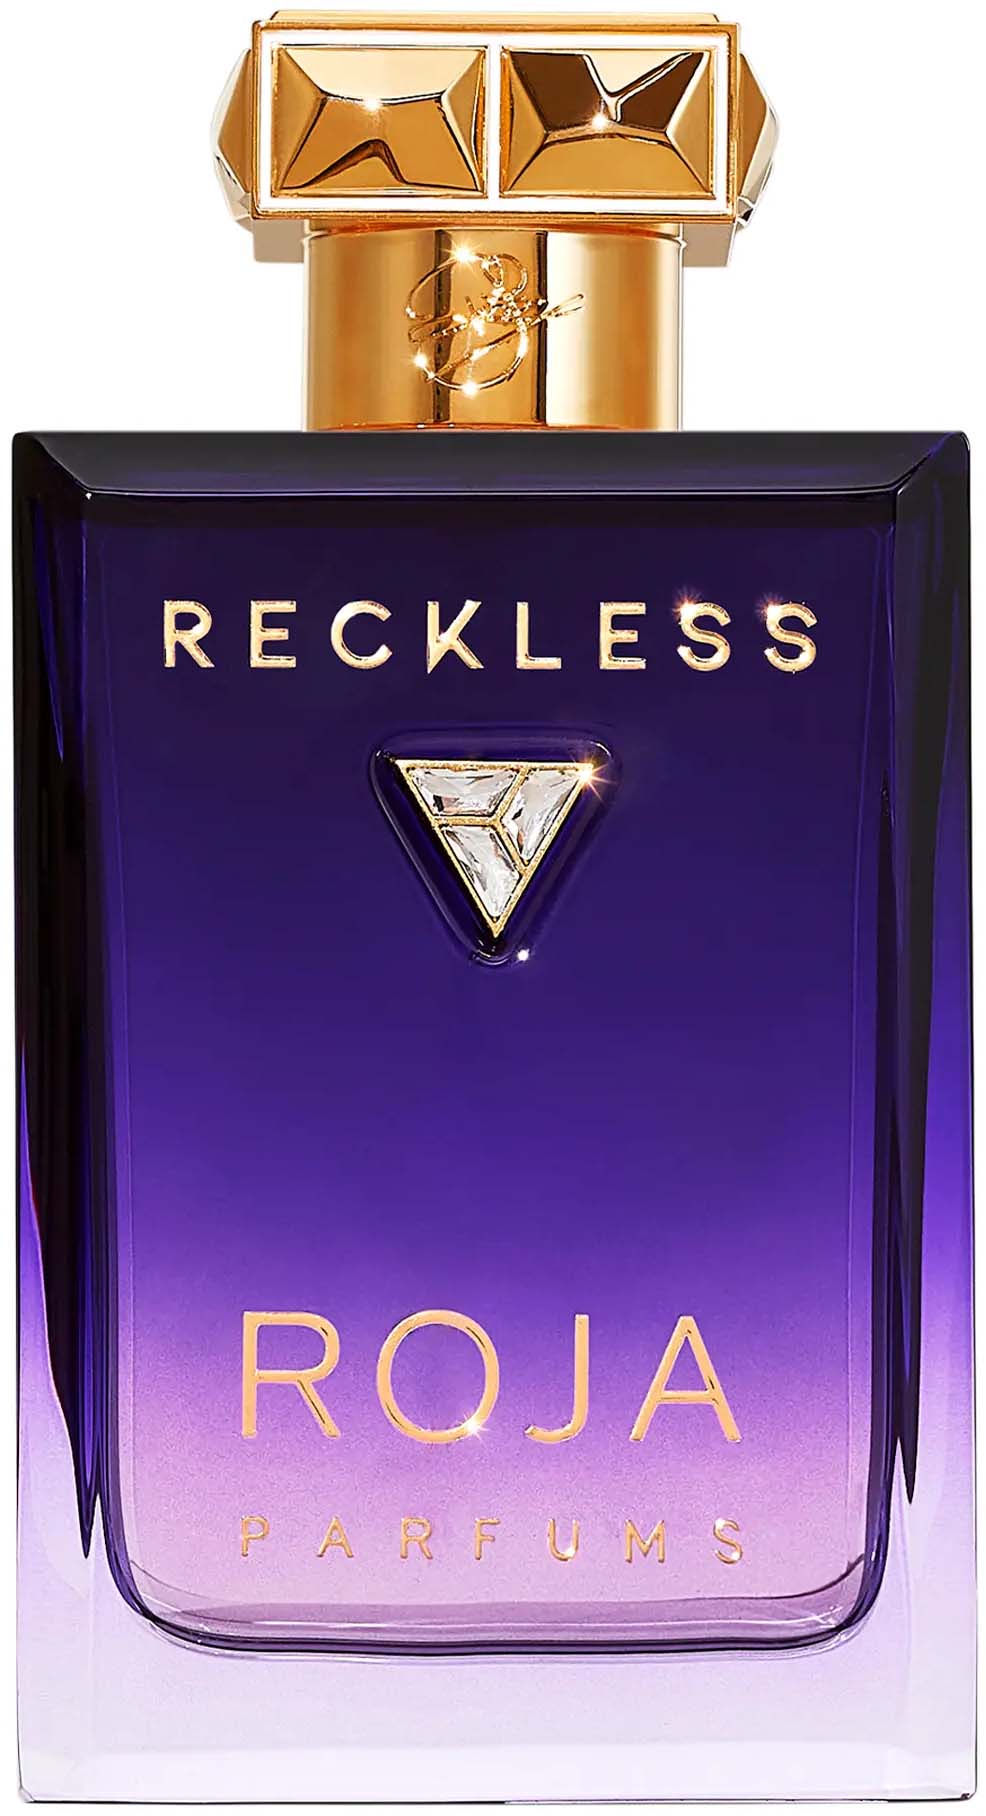 roja parfums reckless essence de parfum ekstrakt perfum 100 ml   